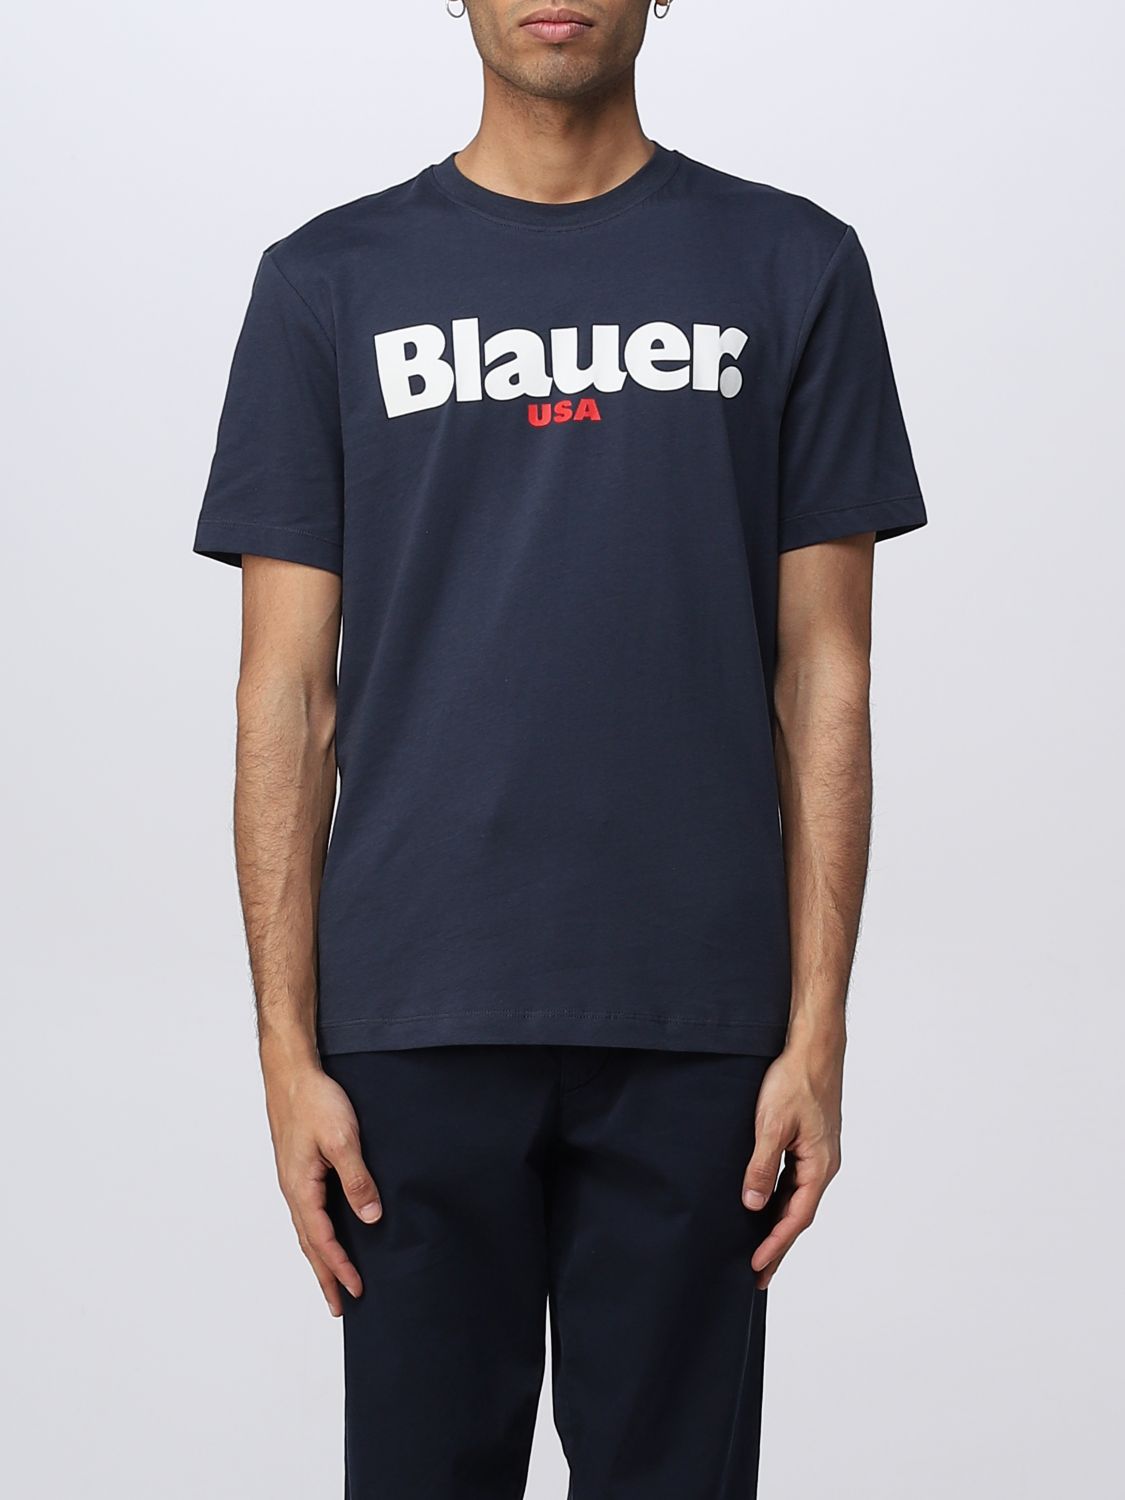 BLAUER T-SHIRT BLAUER MEN COLOR BLUE,379166009